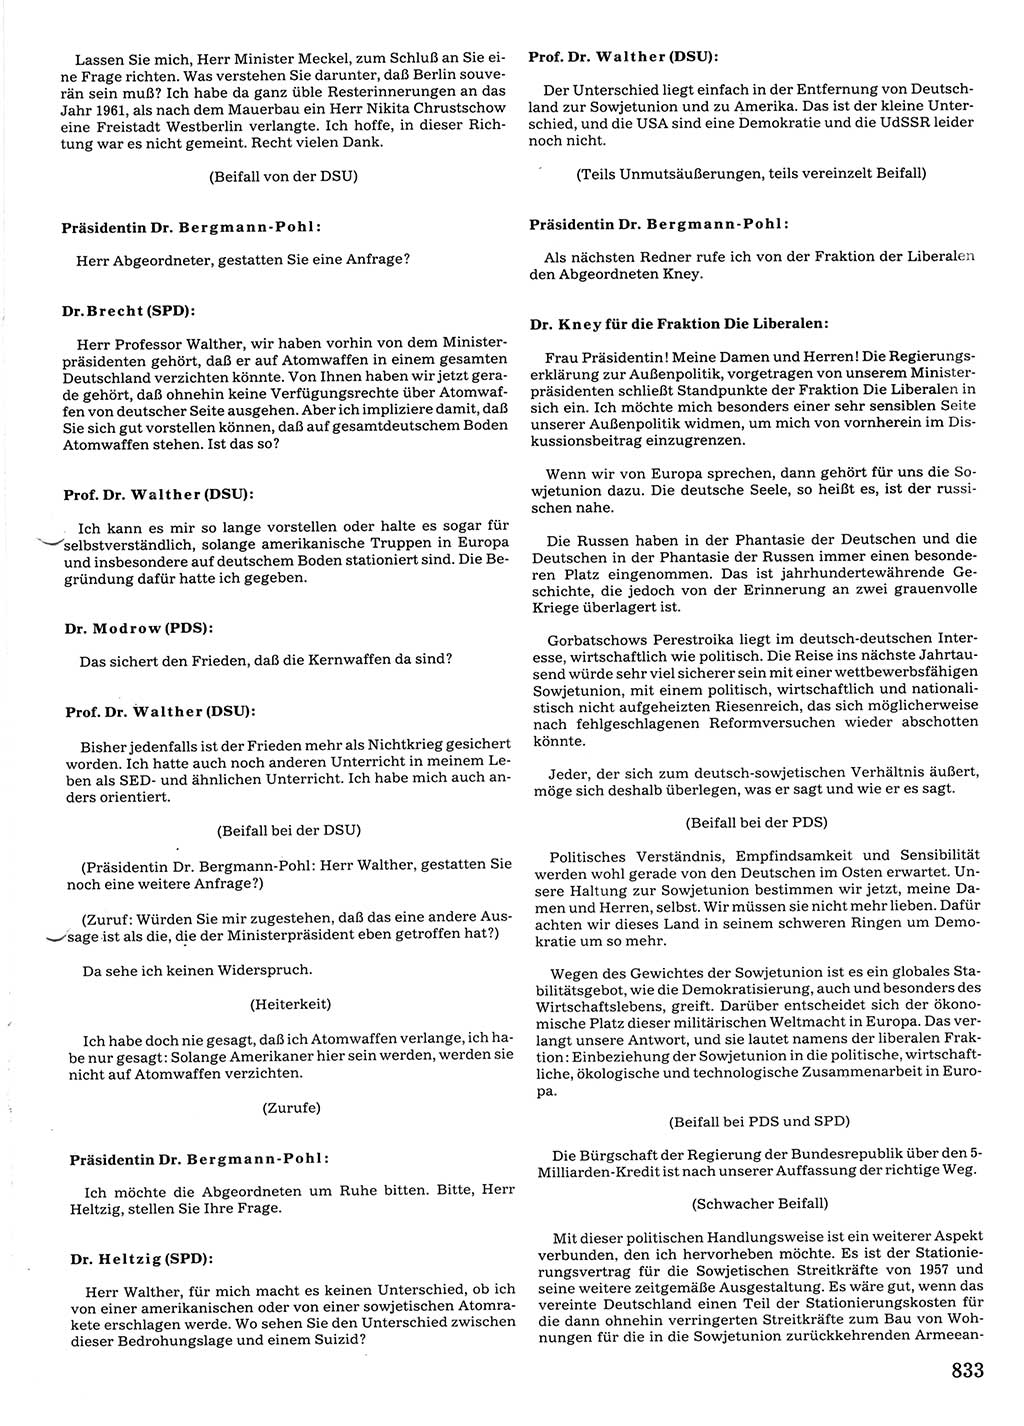 Tagungen der Volkskammer (VK) der Deutschen Demokratischen Republik (DDR), 10. Wahlperiode 1990, Seite 833 (VK. DDR 10. WP. 1990, Prot. Tg. 1-38, 5.4.-2.10.1990, S. 833)